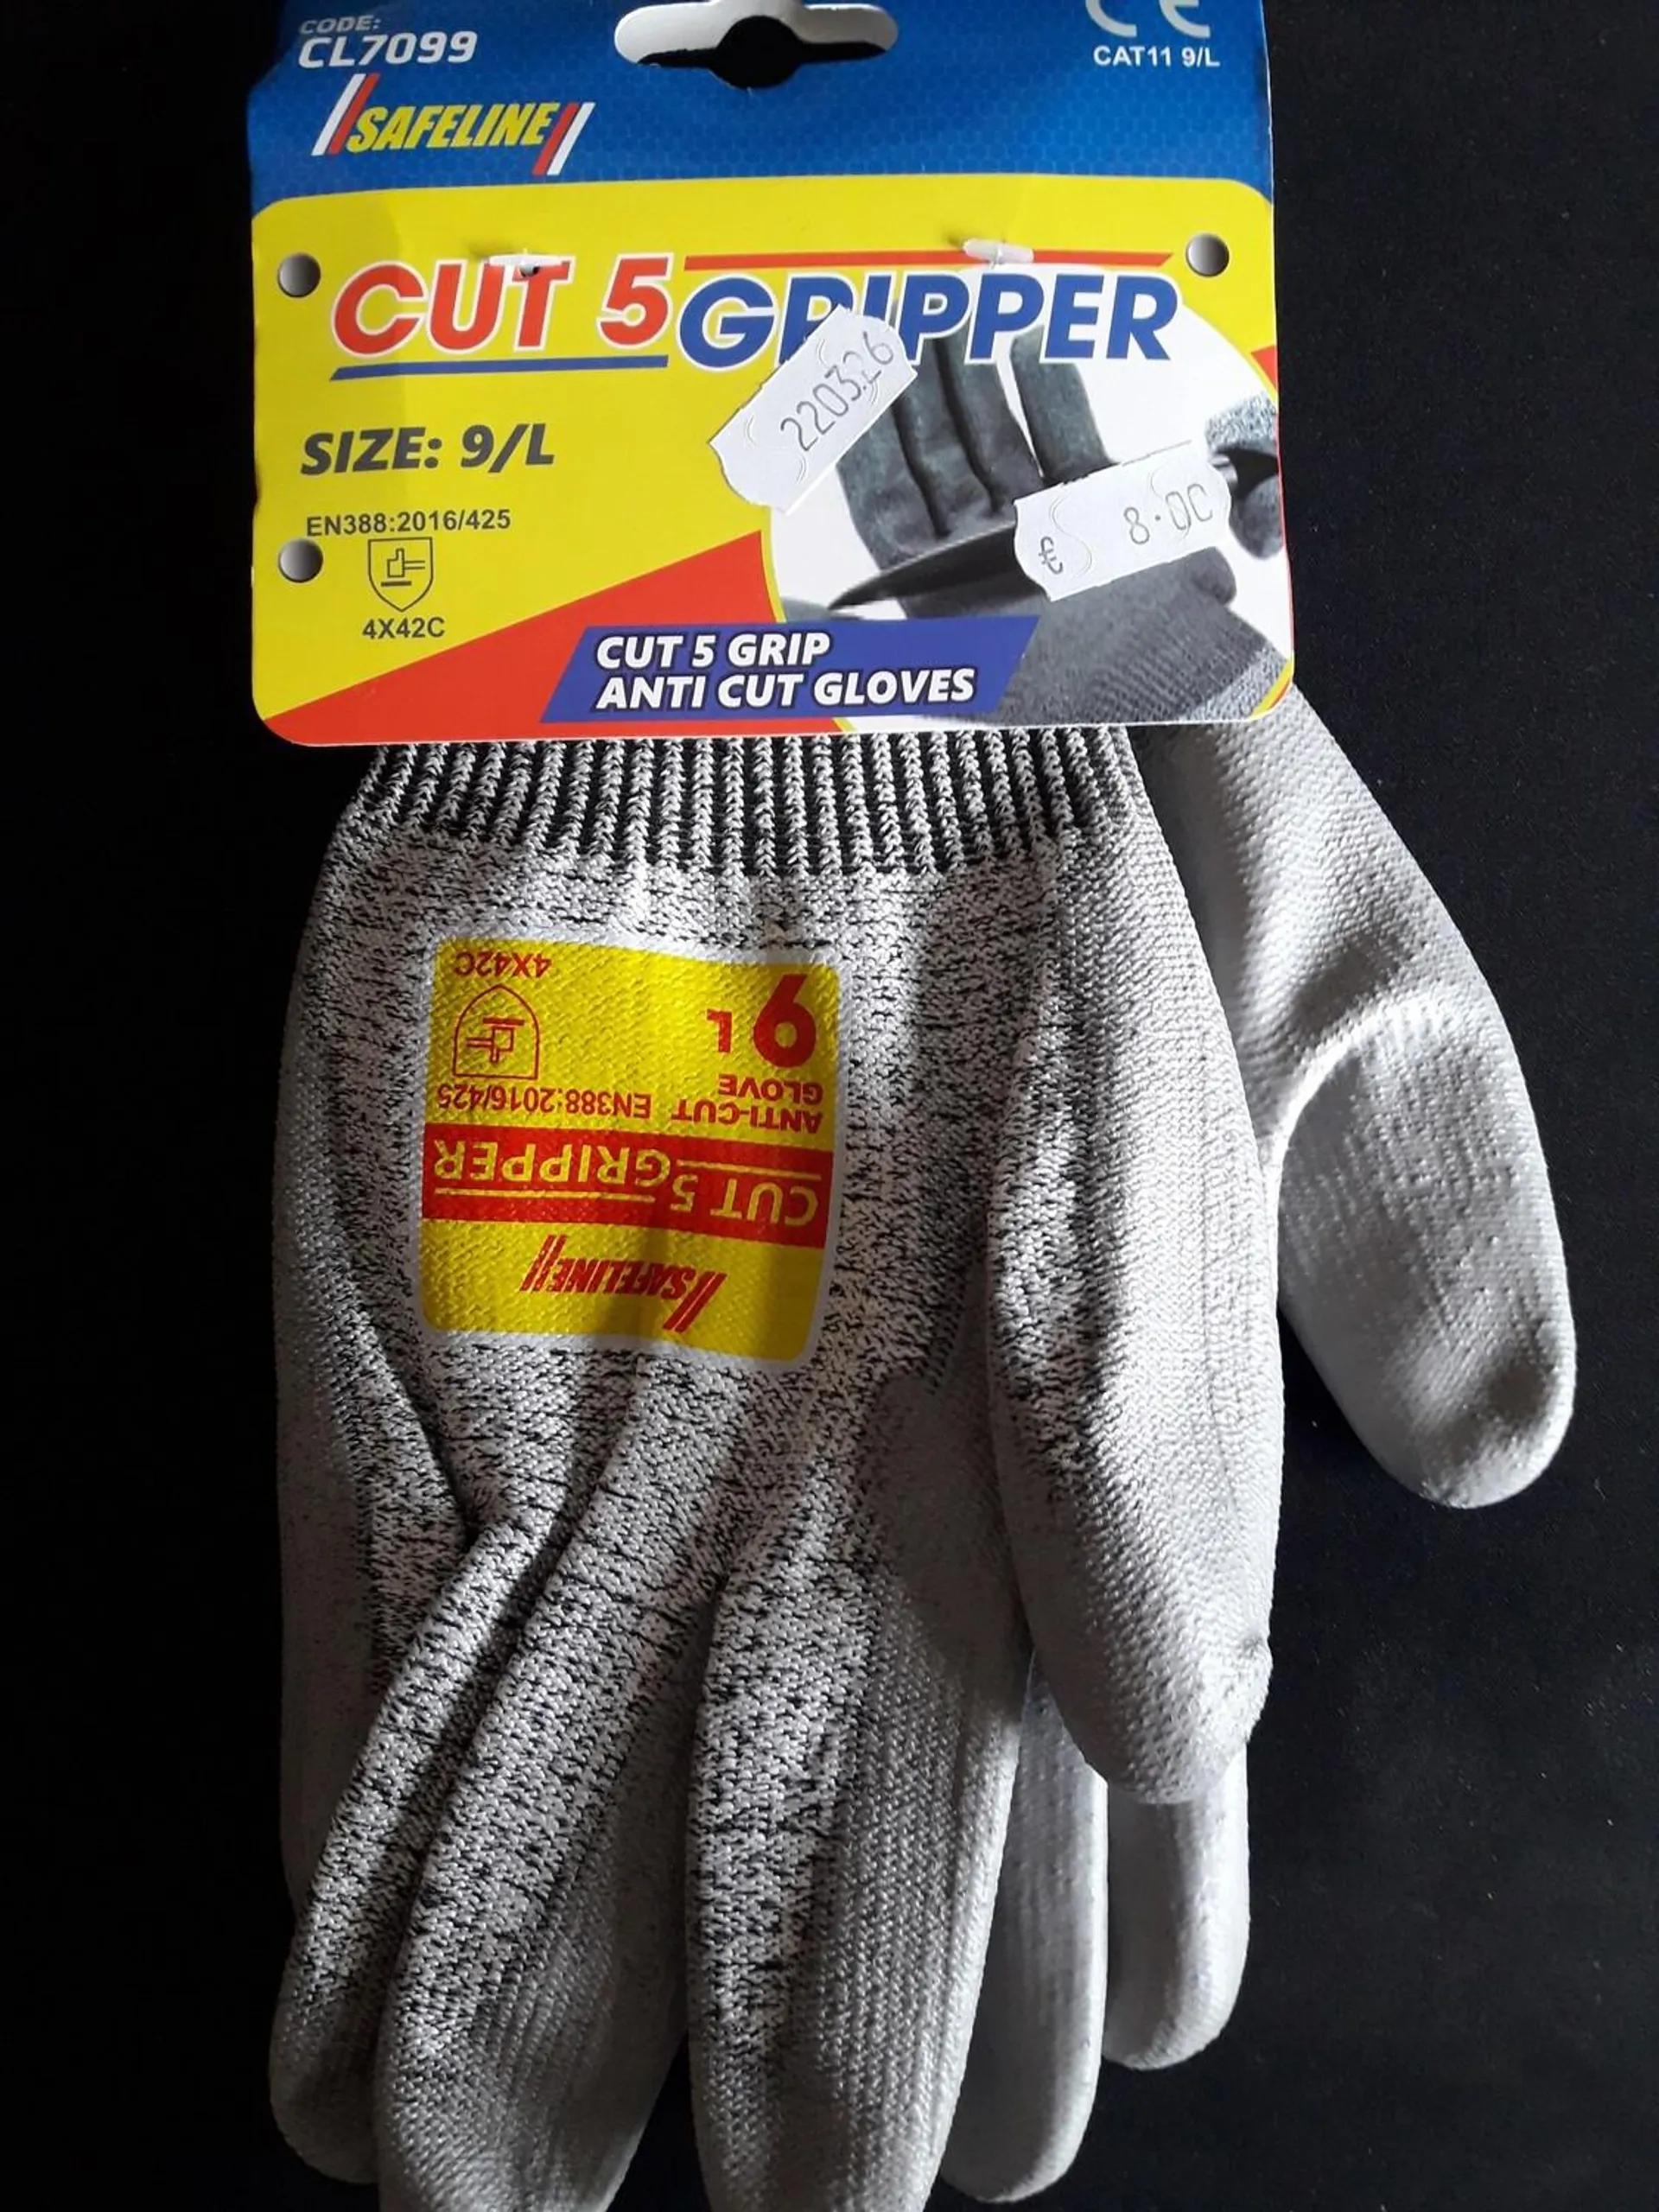 Safeline Anti Cut 5 Gripper Gloves